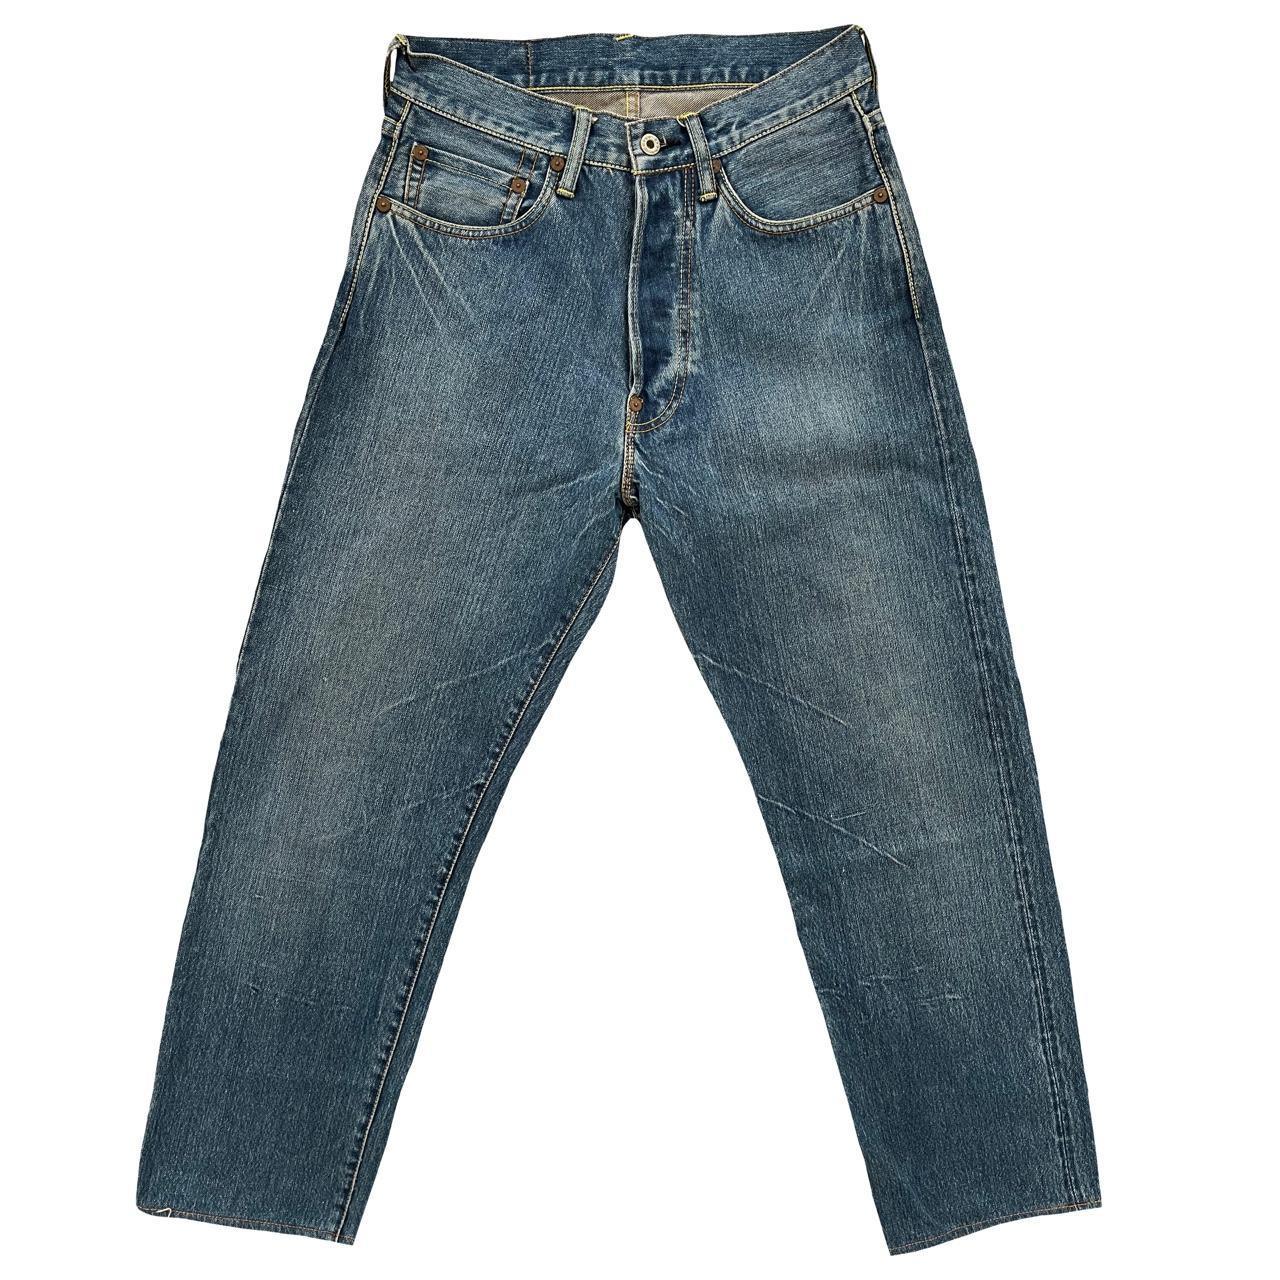 Evisu Paris Jeans - Known Source